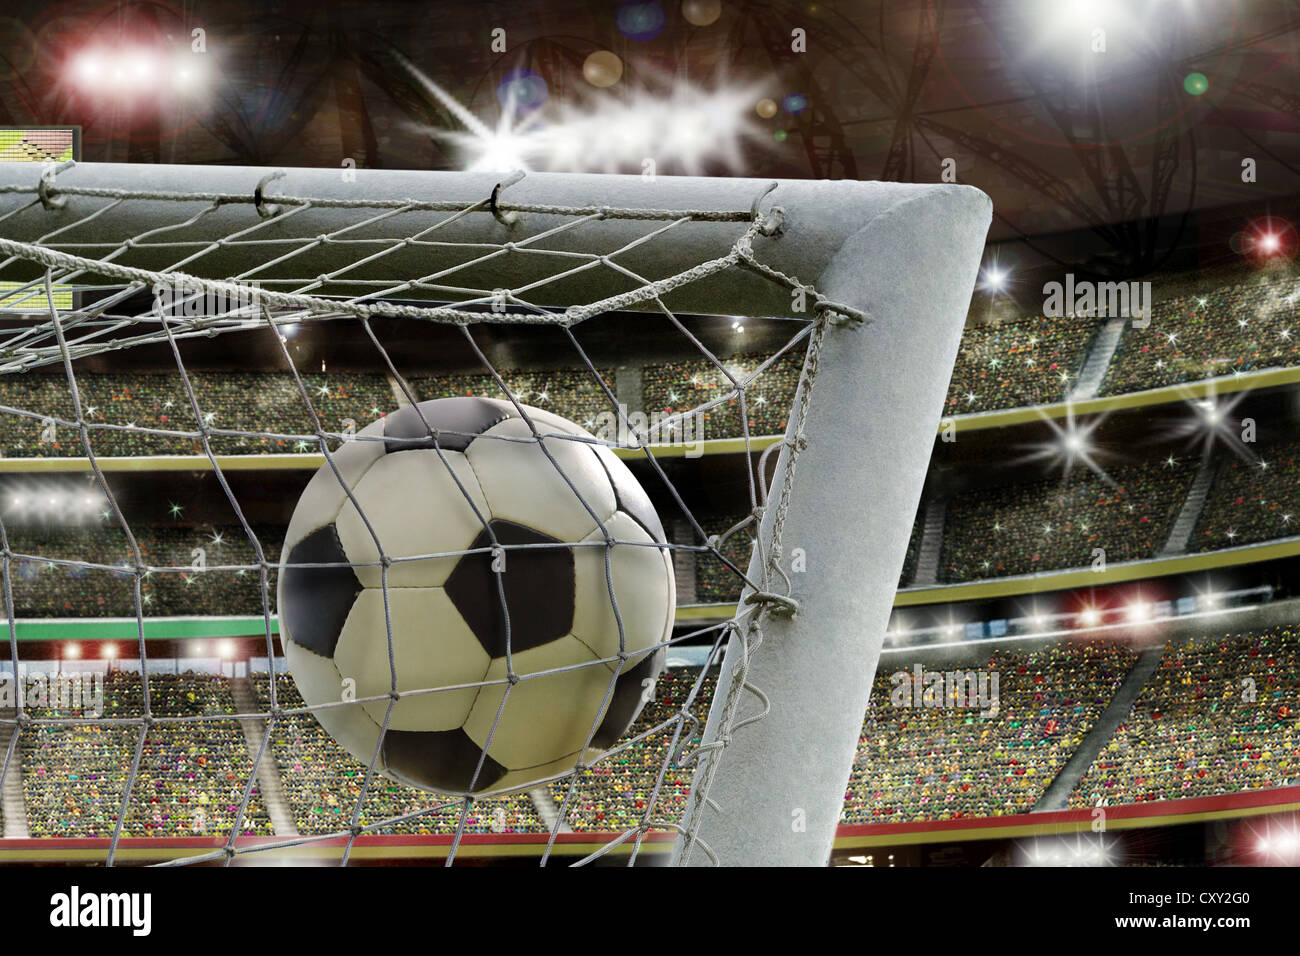 Soccer stadium, net, soccer ball, goal, grand stand Stock Photo